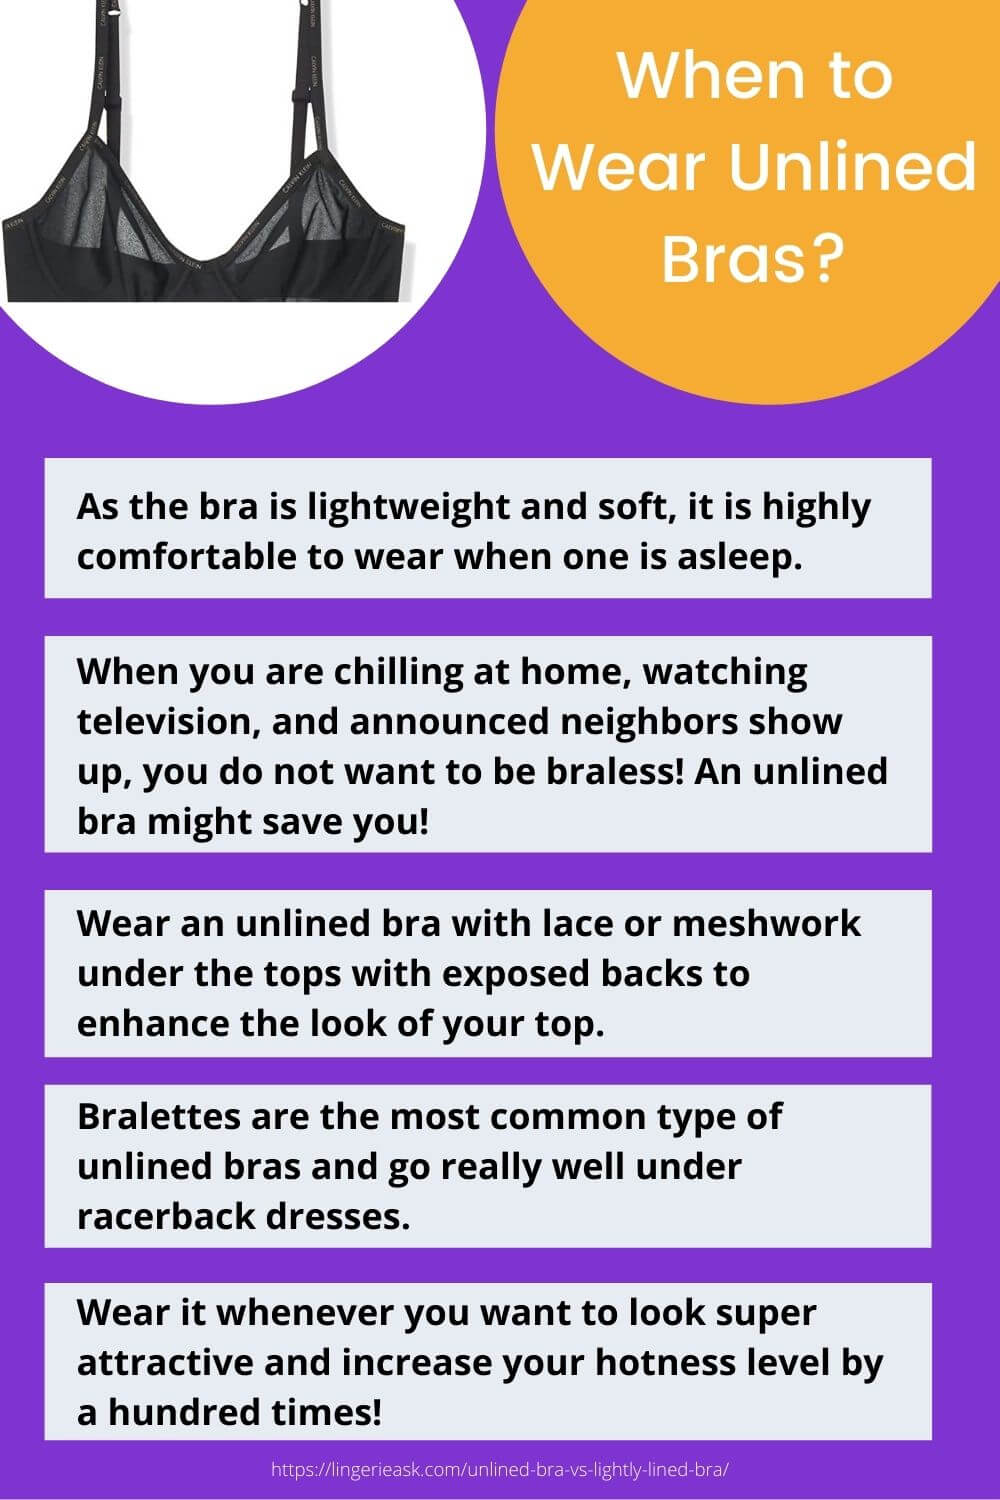 When to Wear Unlined Bras